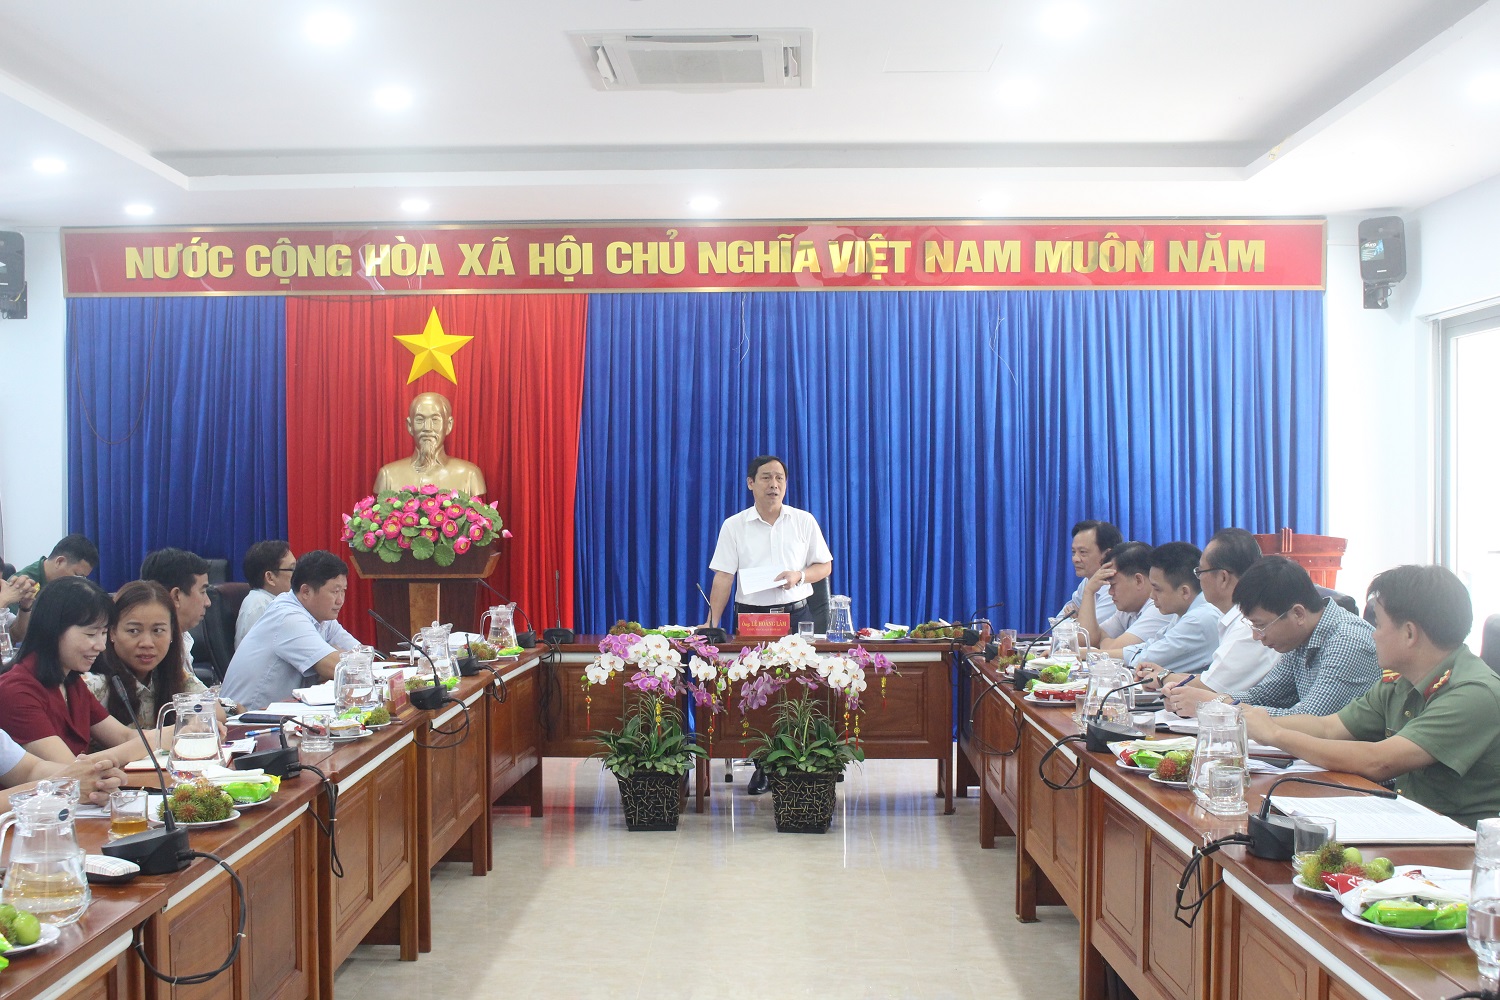 Thu nhập bình quân đầu người trên địa bàn huyện Phú Riềng đạt trên 70 triệu đồng.